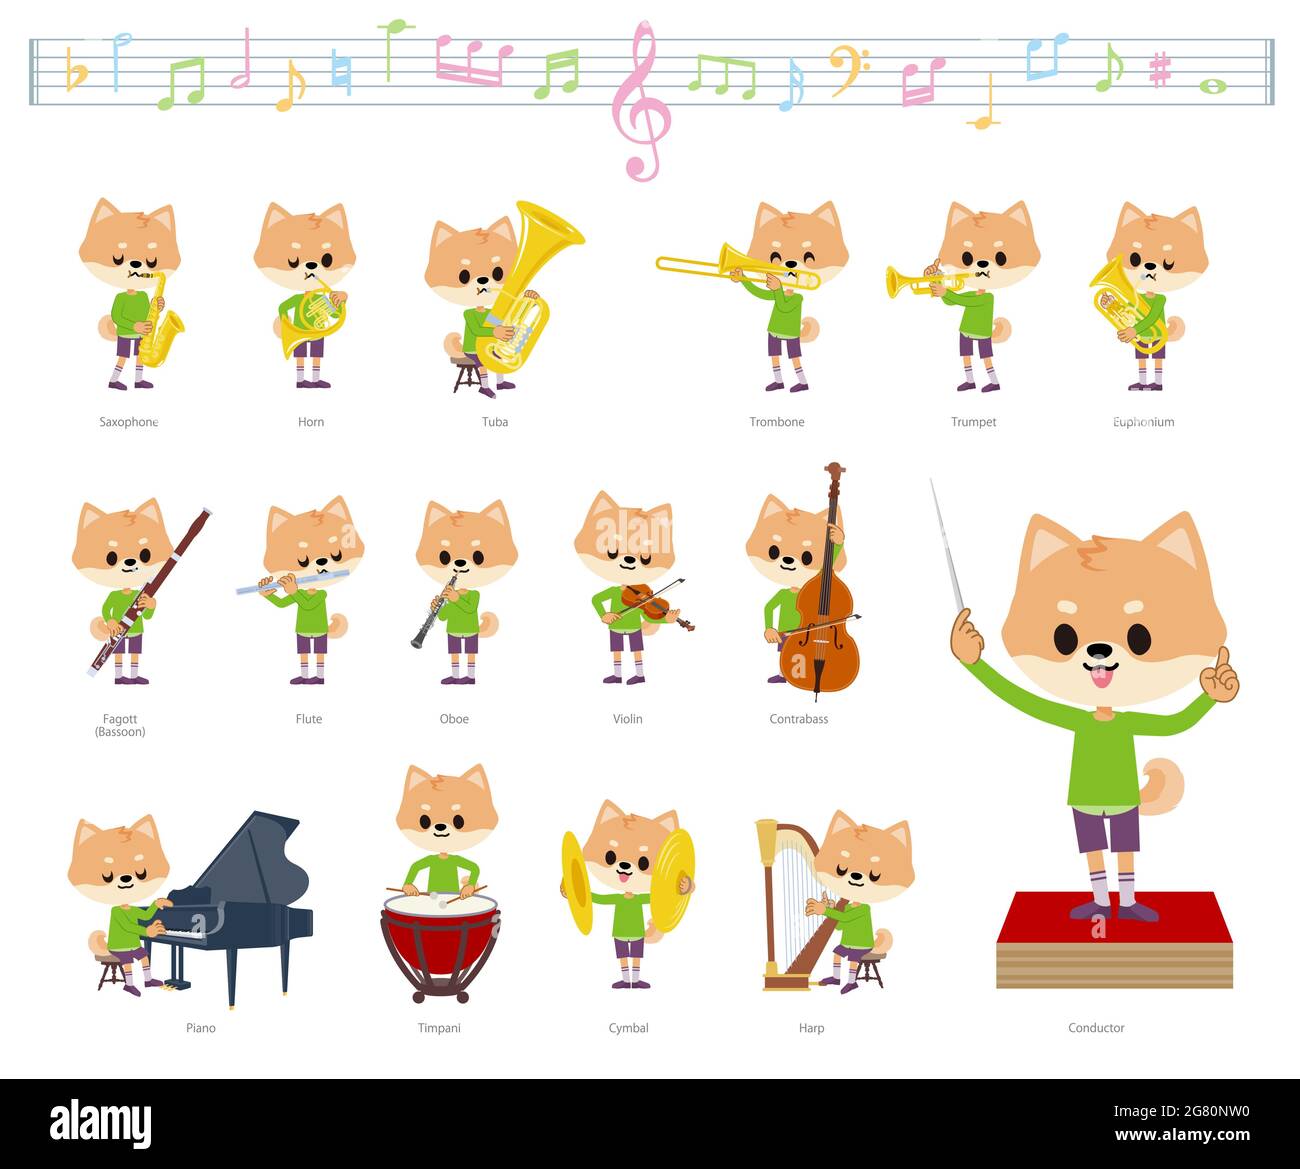 Un jeu de chien garçon sur des performances de musique classique.c'est l'art vectoriel pour qu'il soit facile à éditer. Illustration de Vecteur